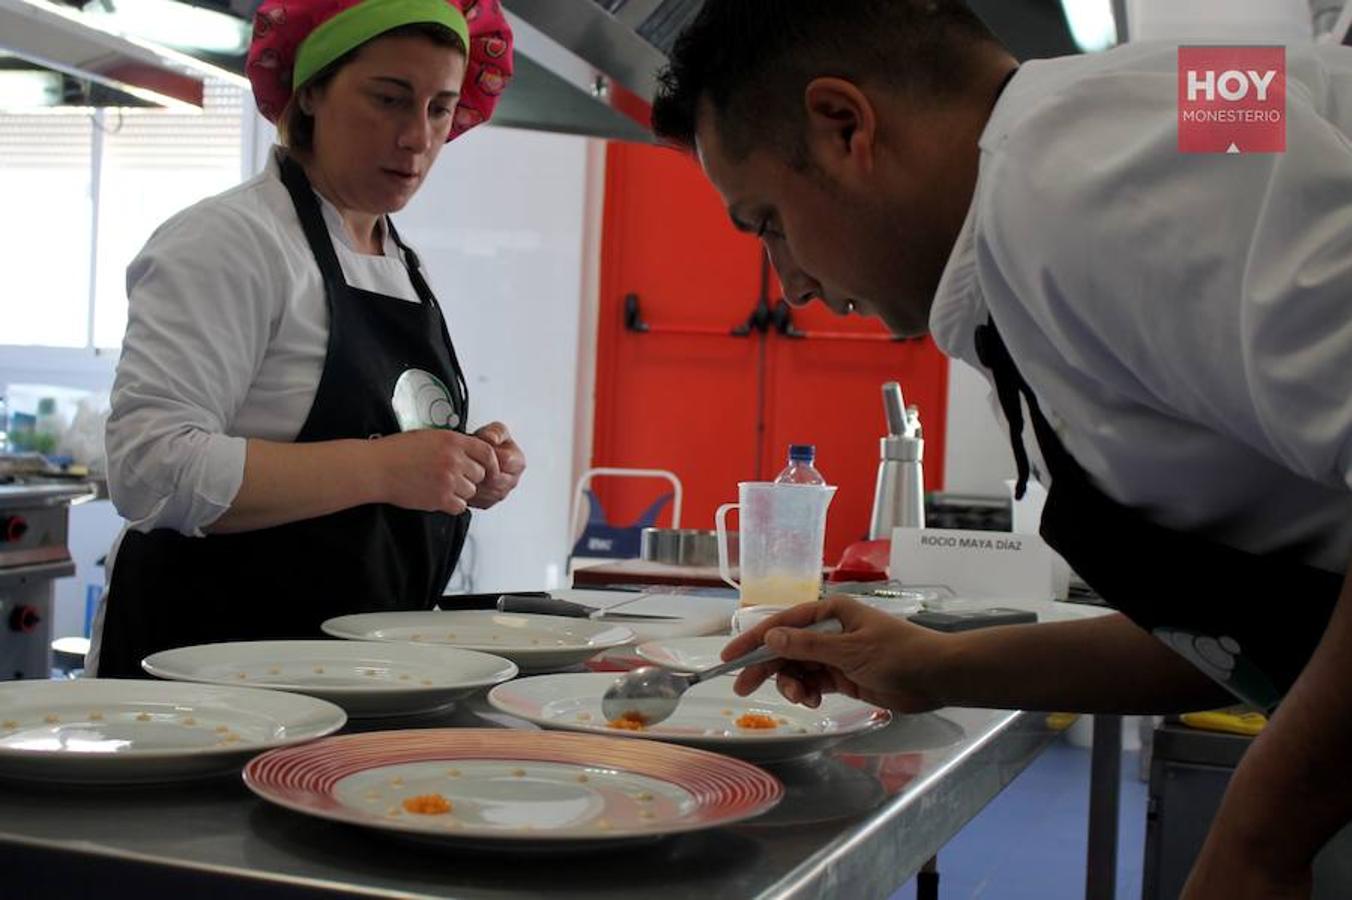 Seis cocineros llegados desde diferentes puntos de la geografía española participaron ayer en este concurso culinario, con motivo de la V Semana Gastronómimca de la Dehesa de Monesterio 